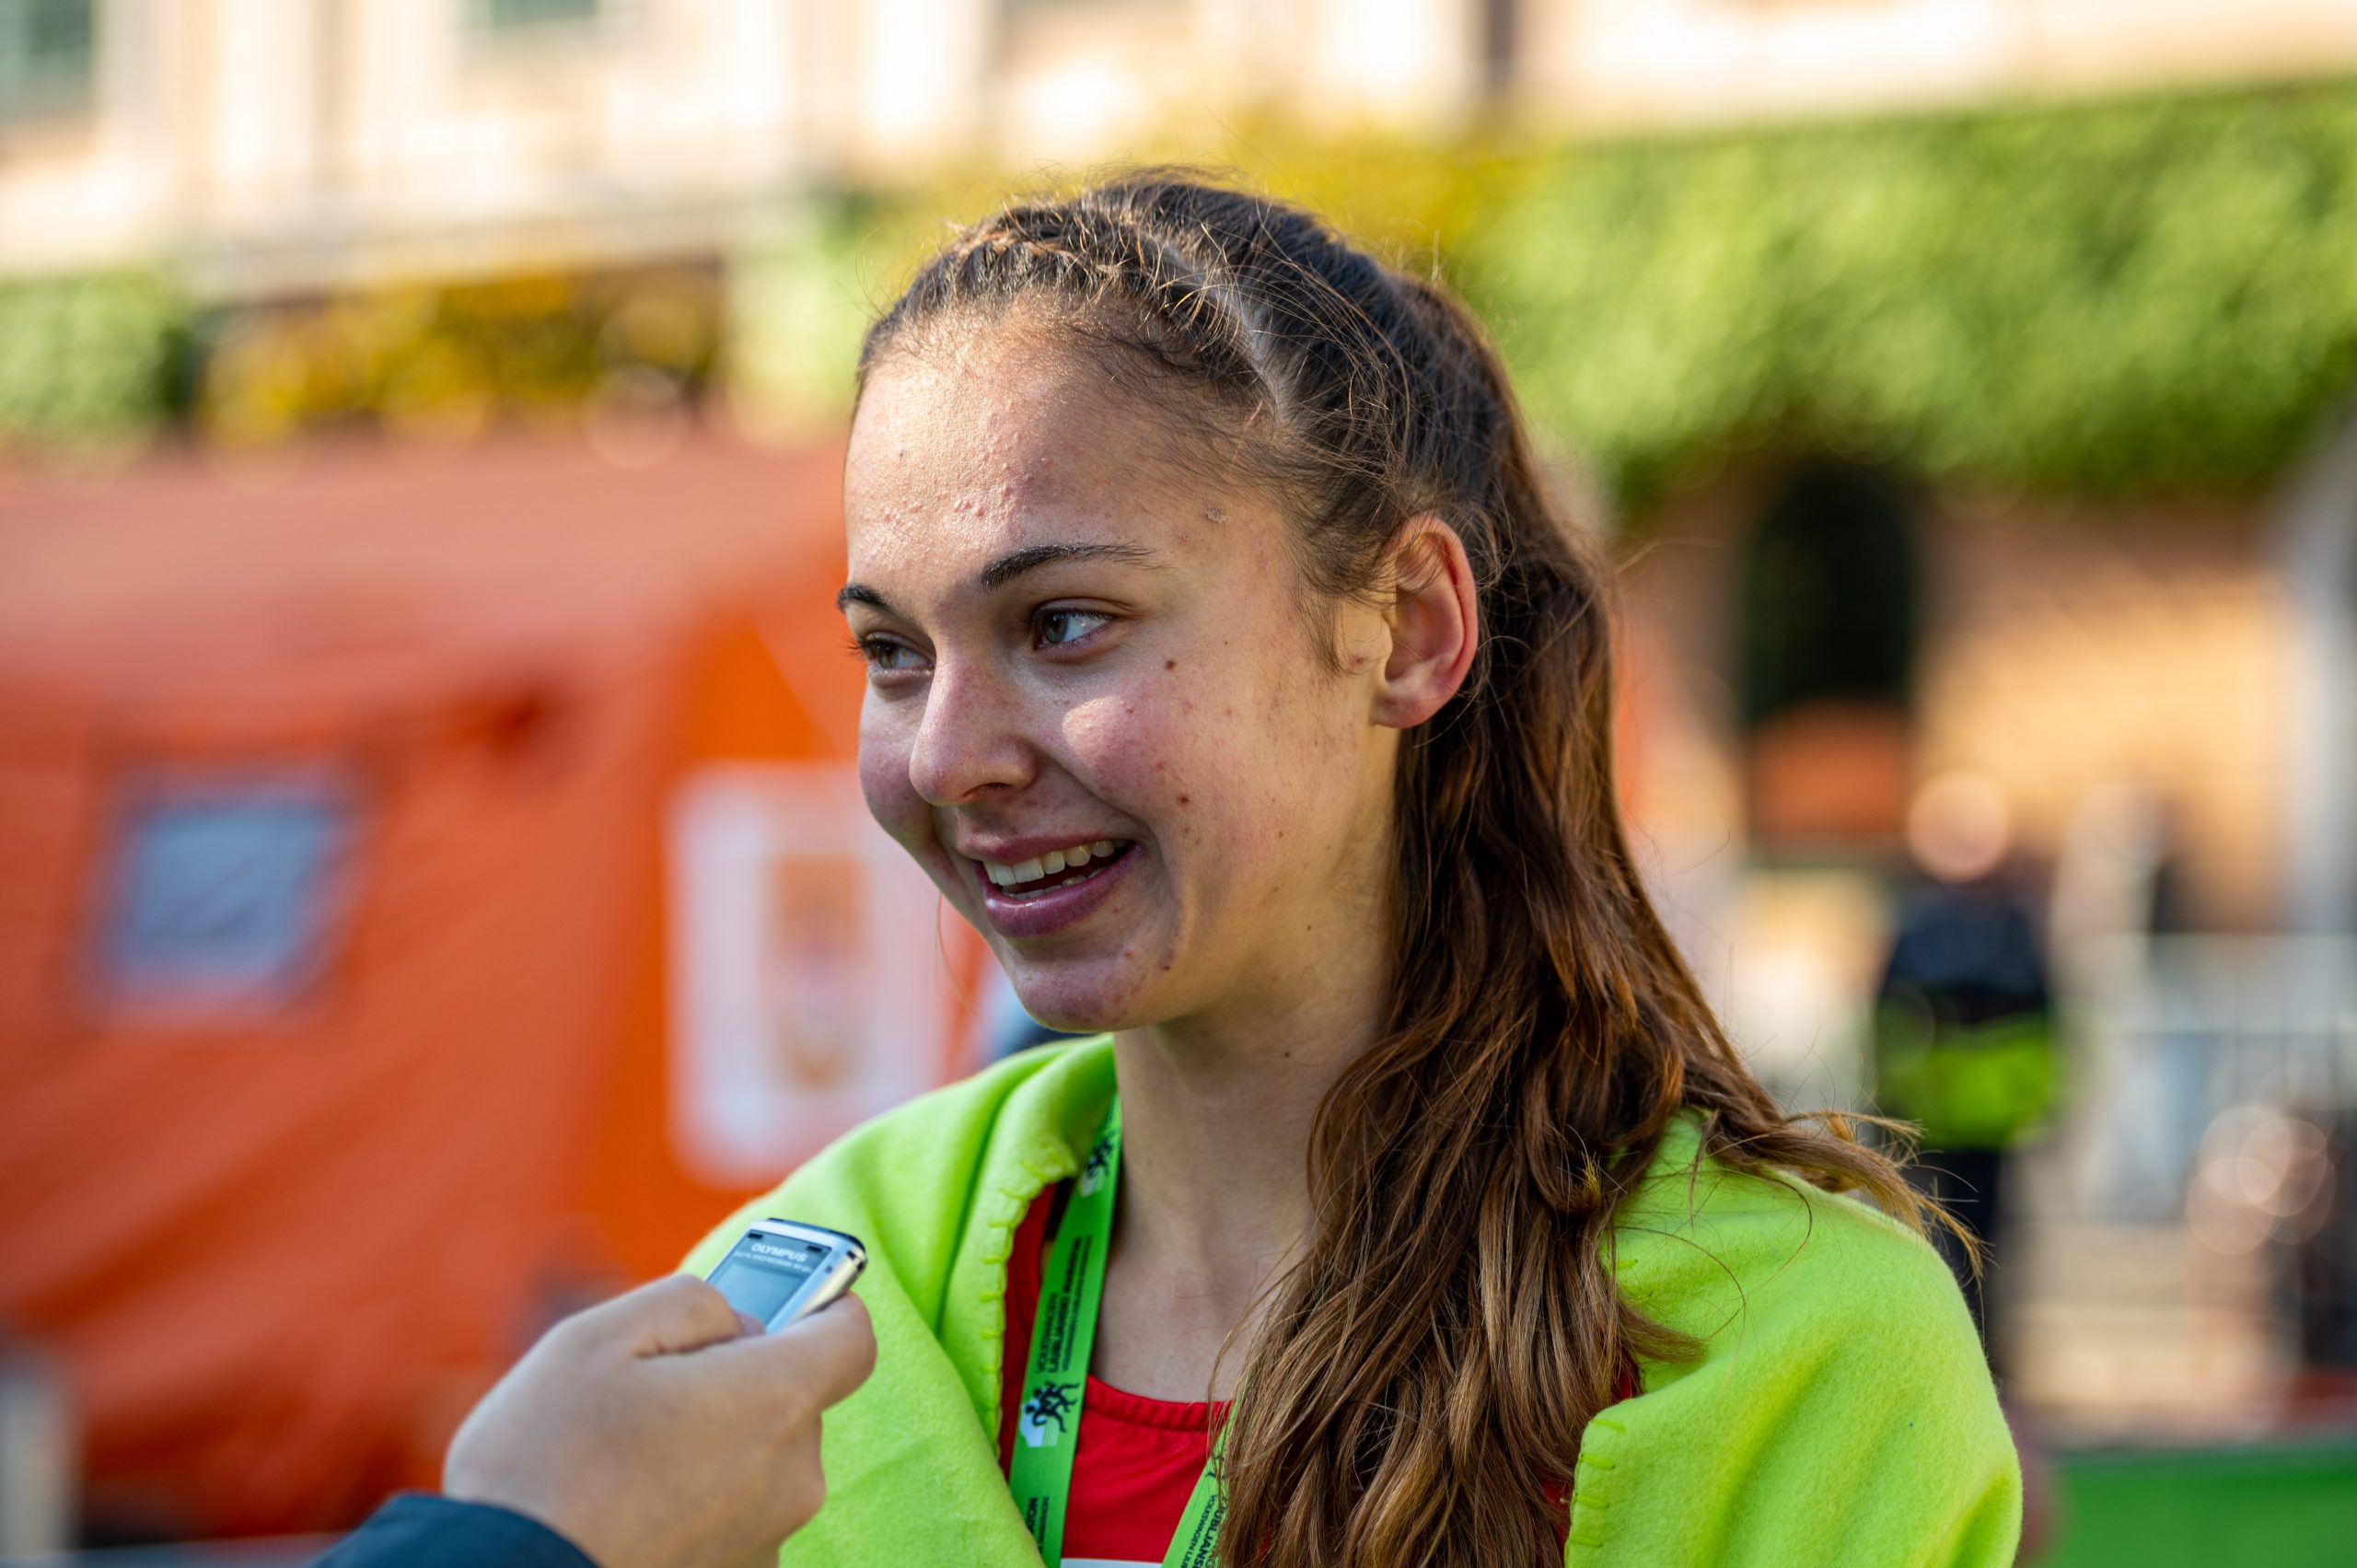 Državna prvakinja v maratonu 2021 Anja fink in Marko Hrastar. FOTO: Uroš Skaza